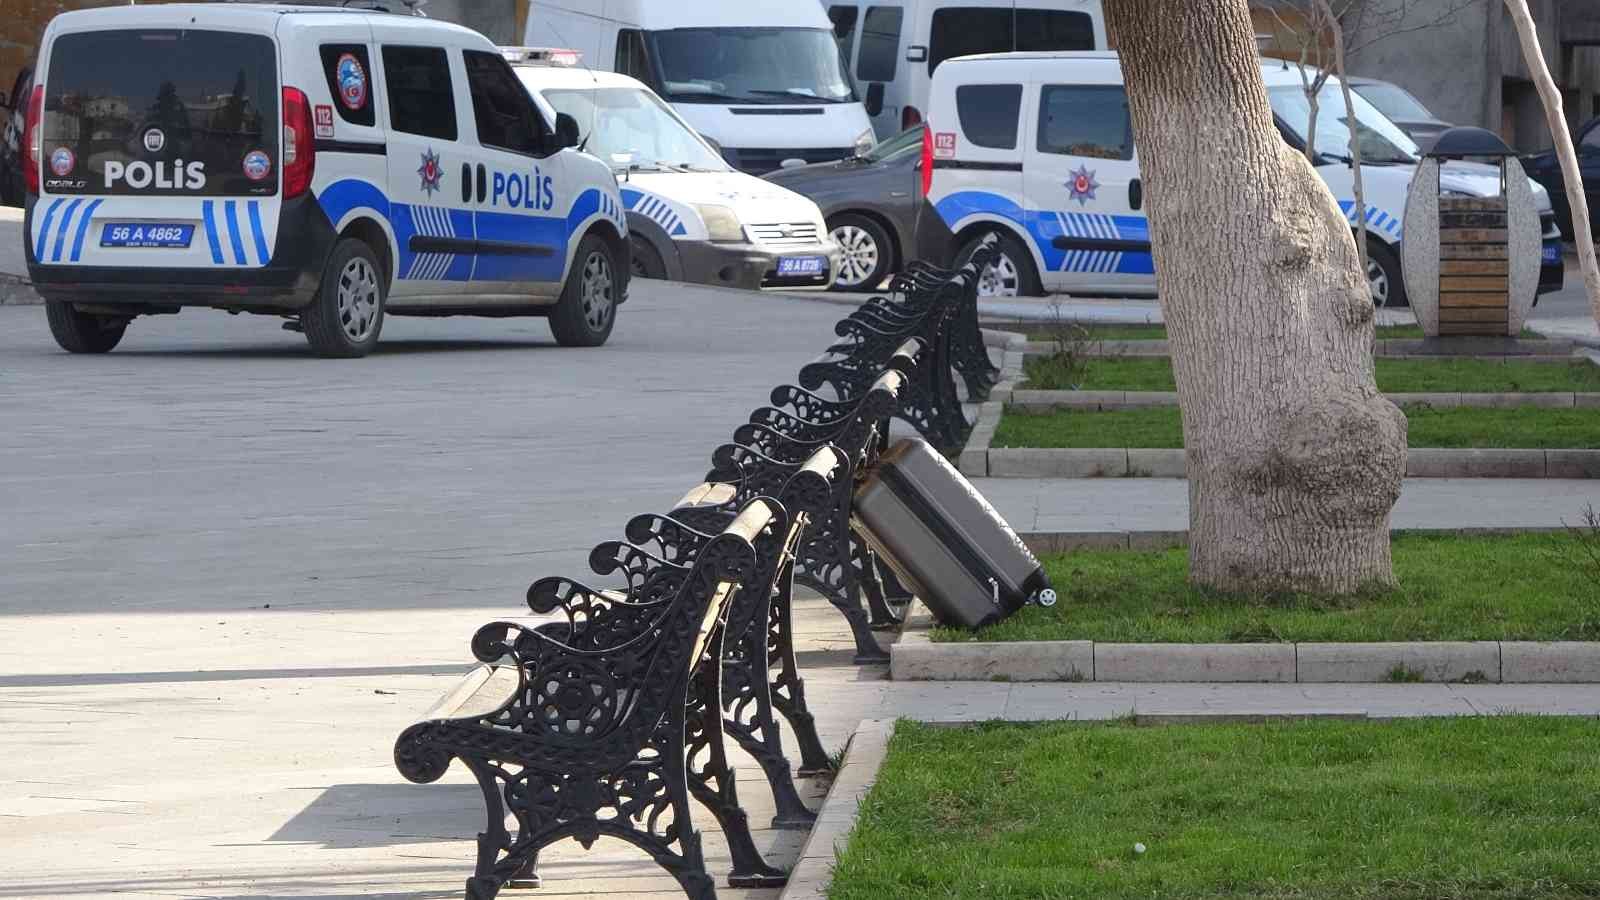 Siirt’te şüpheli bavul fünyeyle patlatıldı #siirt